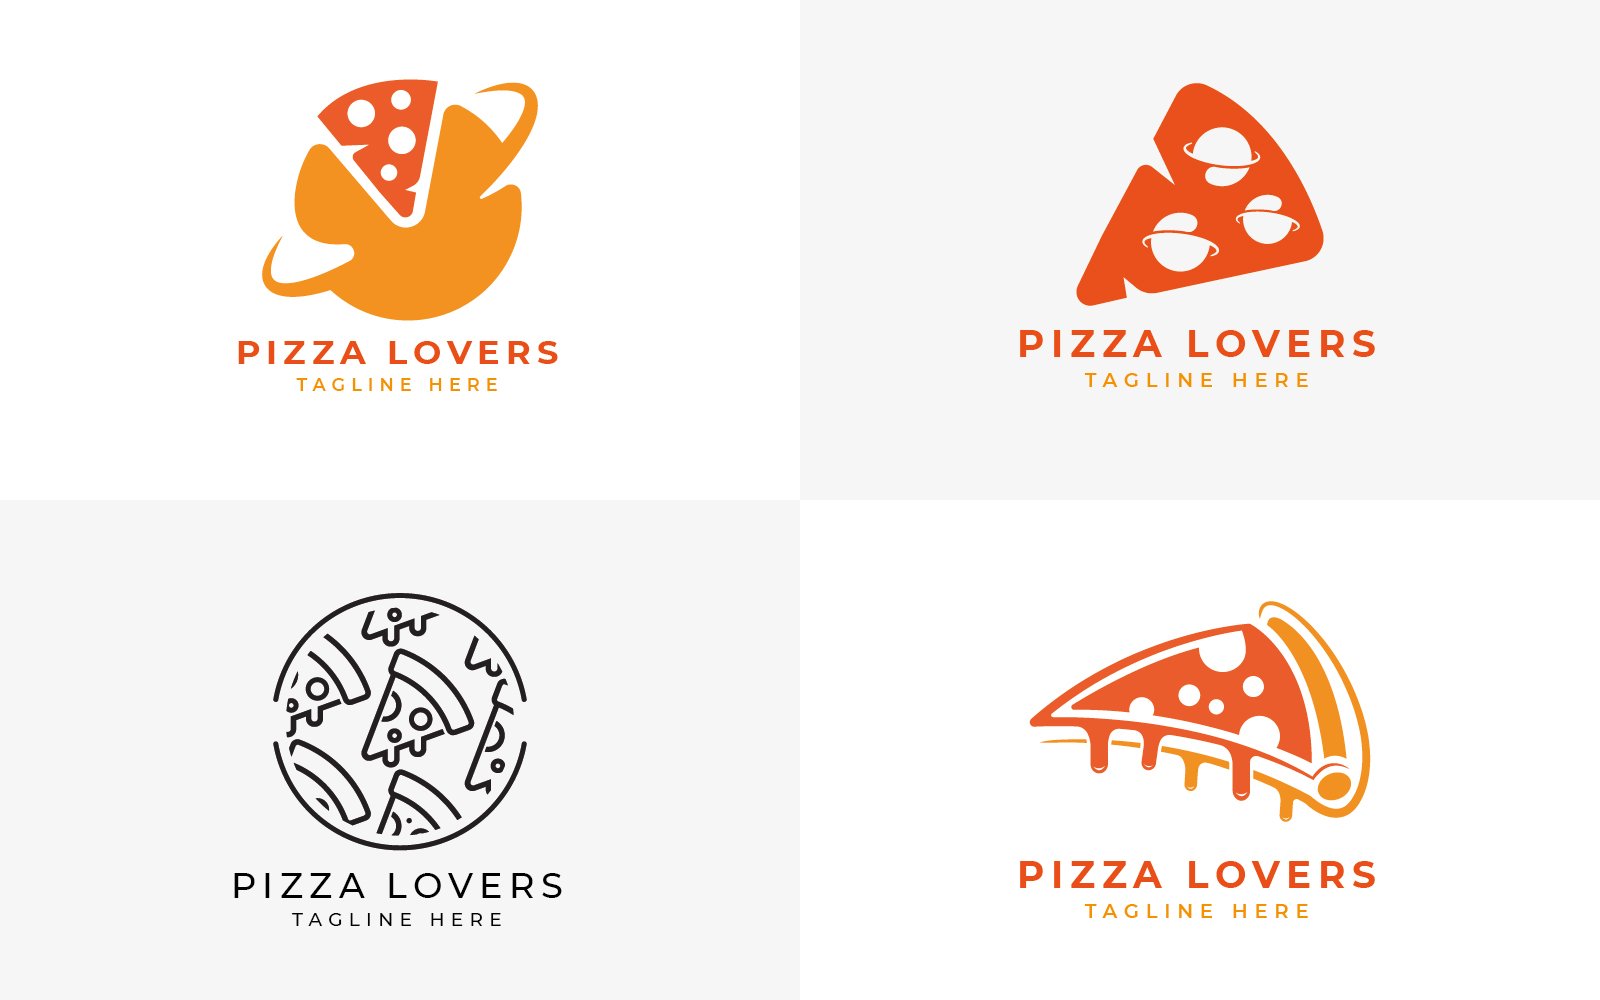 pizza logo design collection